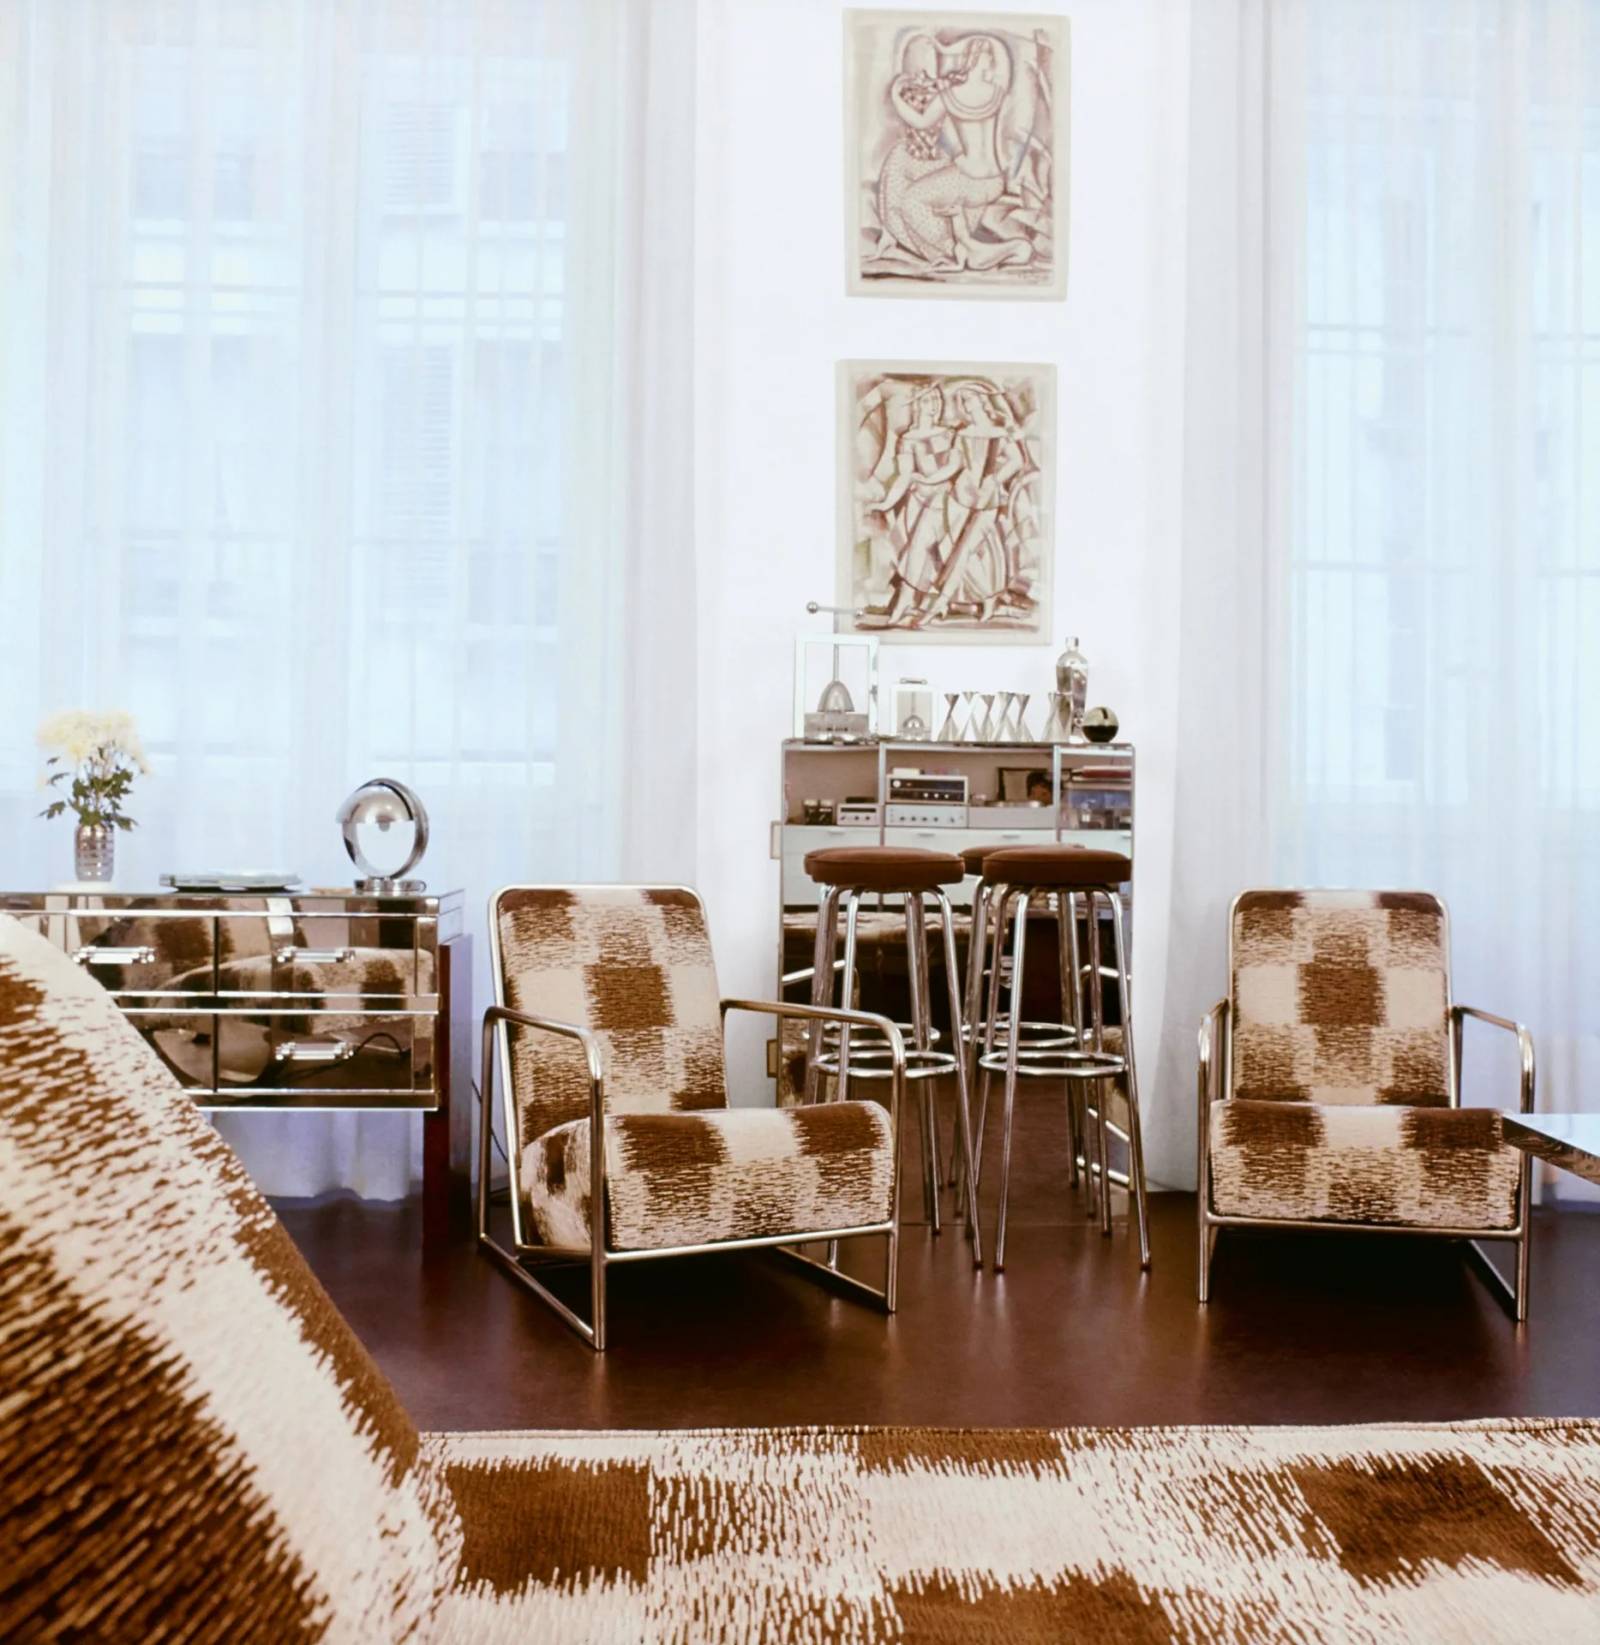 Biuro Karla Lagerfelda w jego paryskim mieszkaniu, gdzie pracował i przyj-mował gości. To zdjęcie zostało pierwotnie opublikowane we wrześniowym wydaniu „Vogue’a” z 1974 roku.